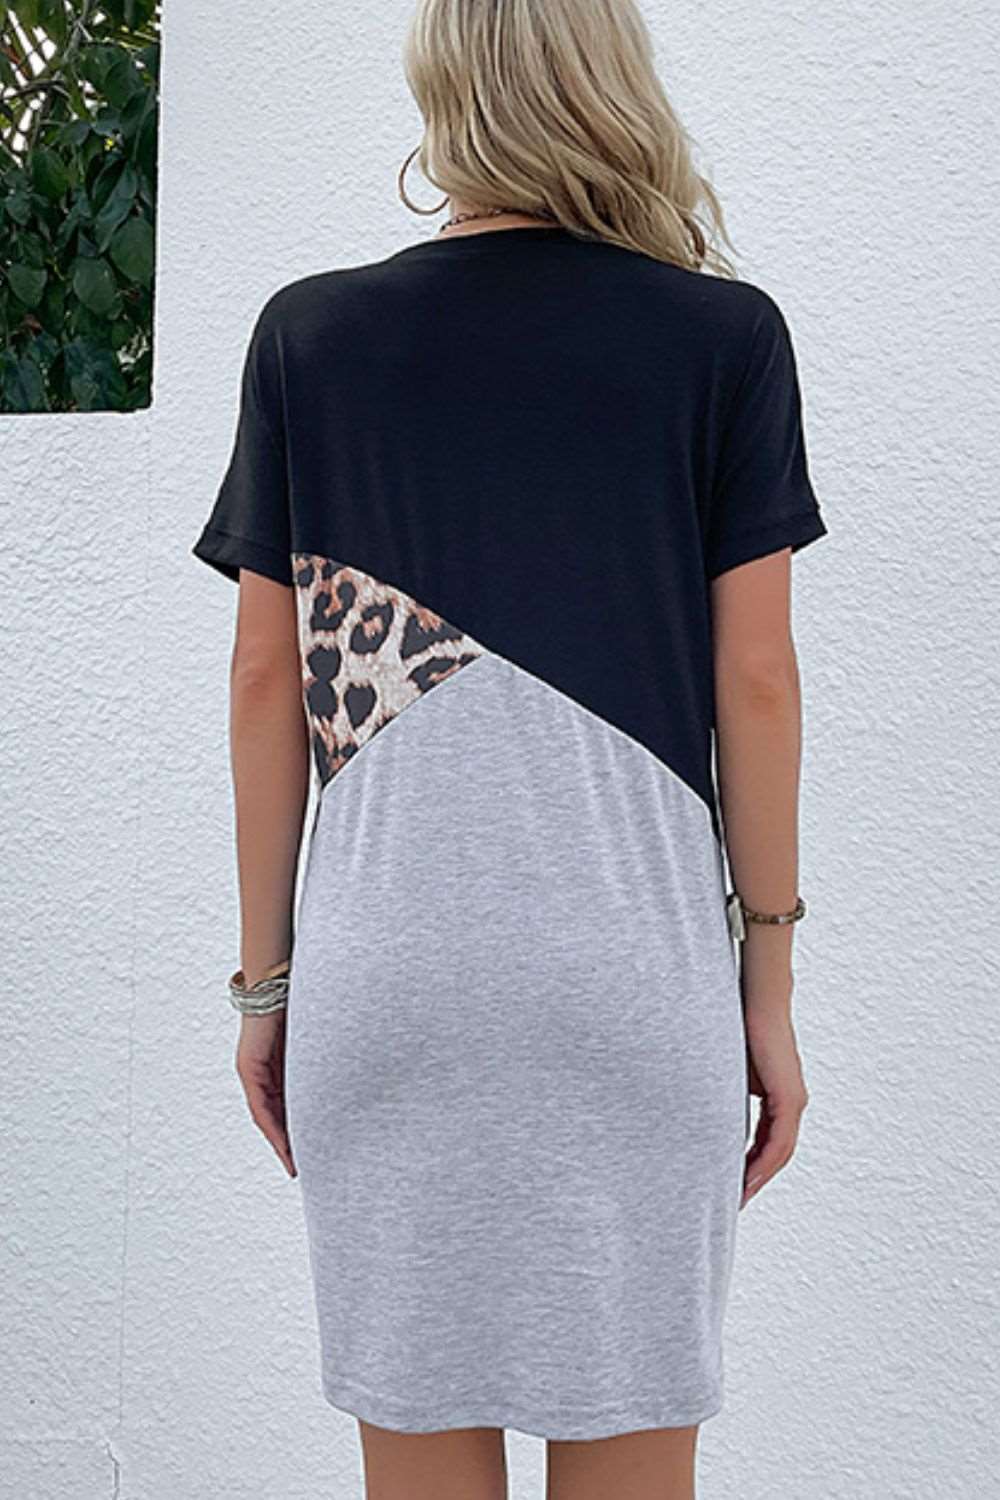 Color Block Leopard Tee Dress  Krazy Heart Designs Boutique   